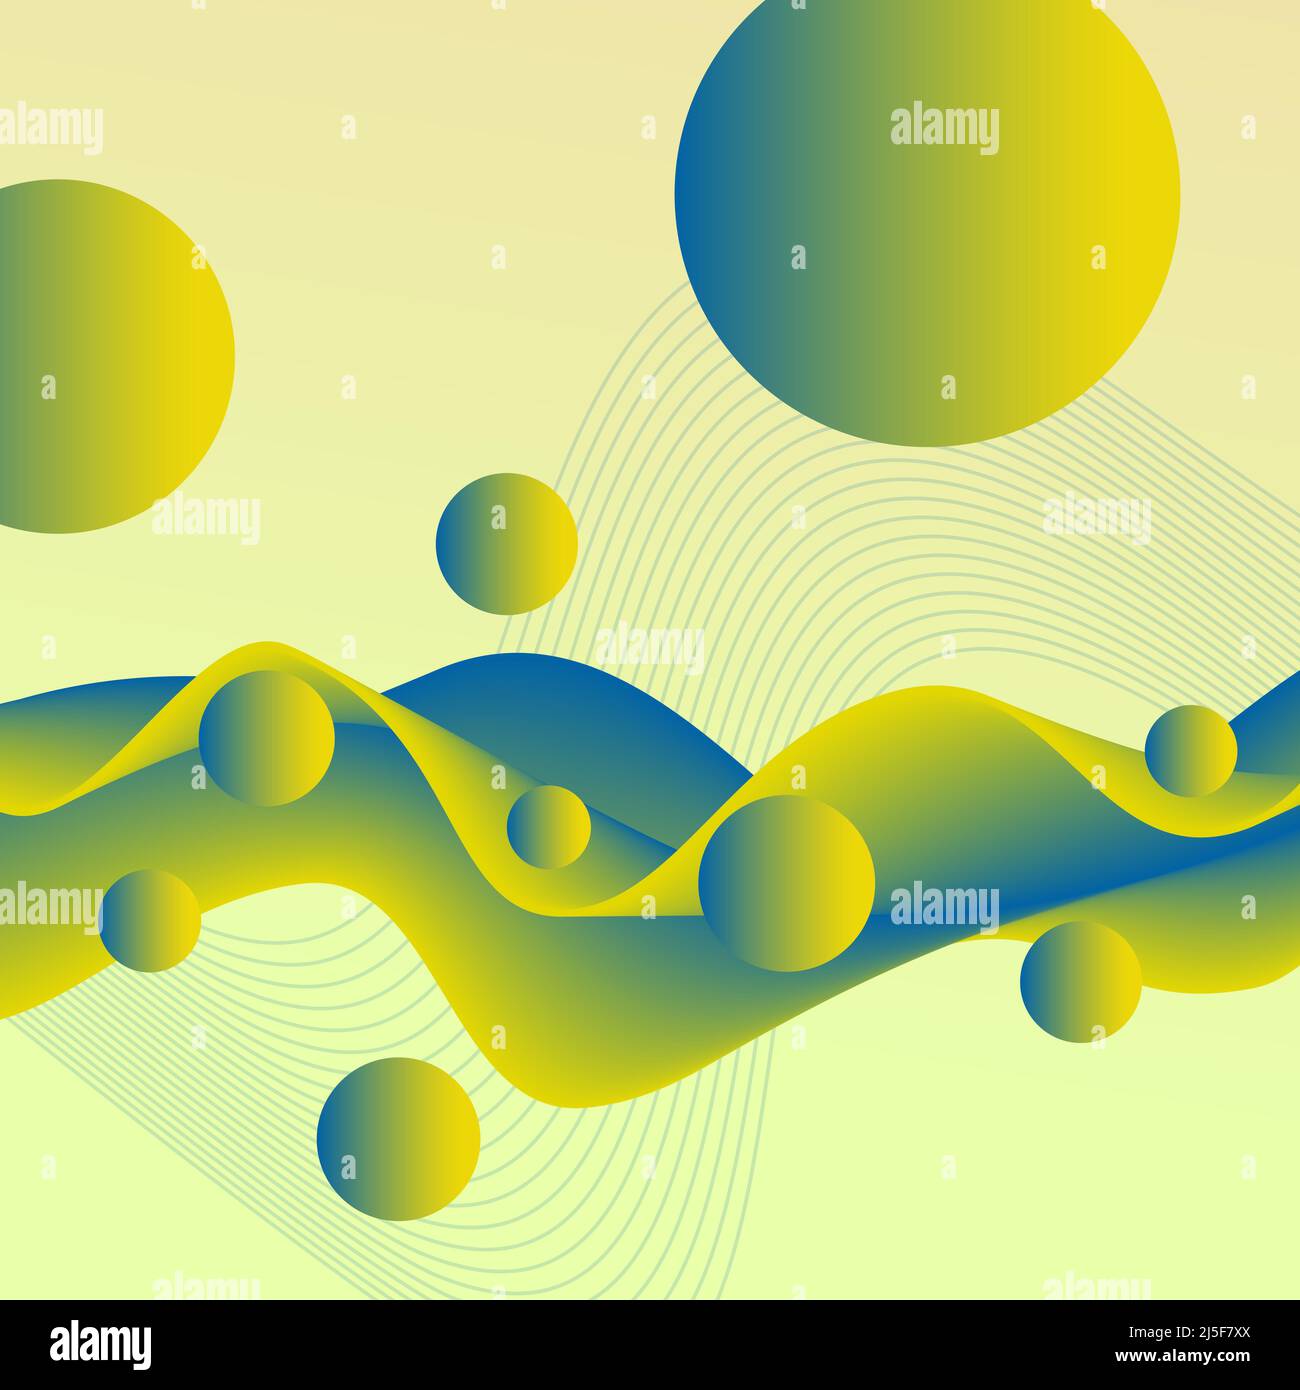 Grün-gelb, blau flüssig 3D Muster. Futuristische Wellen und fliegende Kugeln. Abstrakt gefärbter flüssiger Hintergrund. Transformationskonzept. Kreatives Design Stockfoto